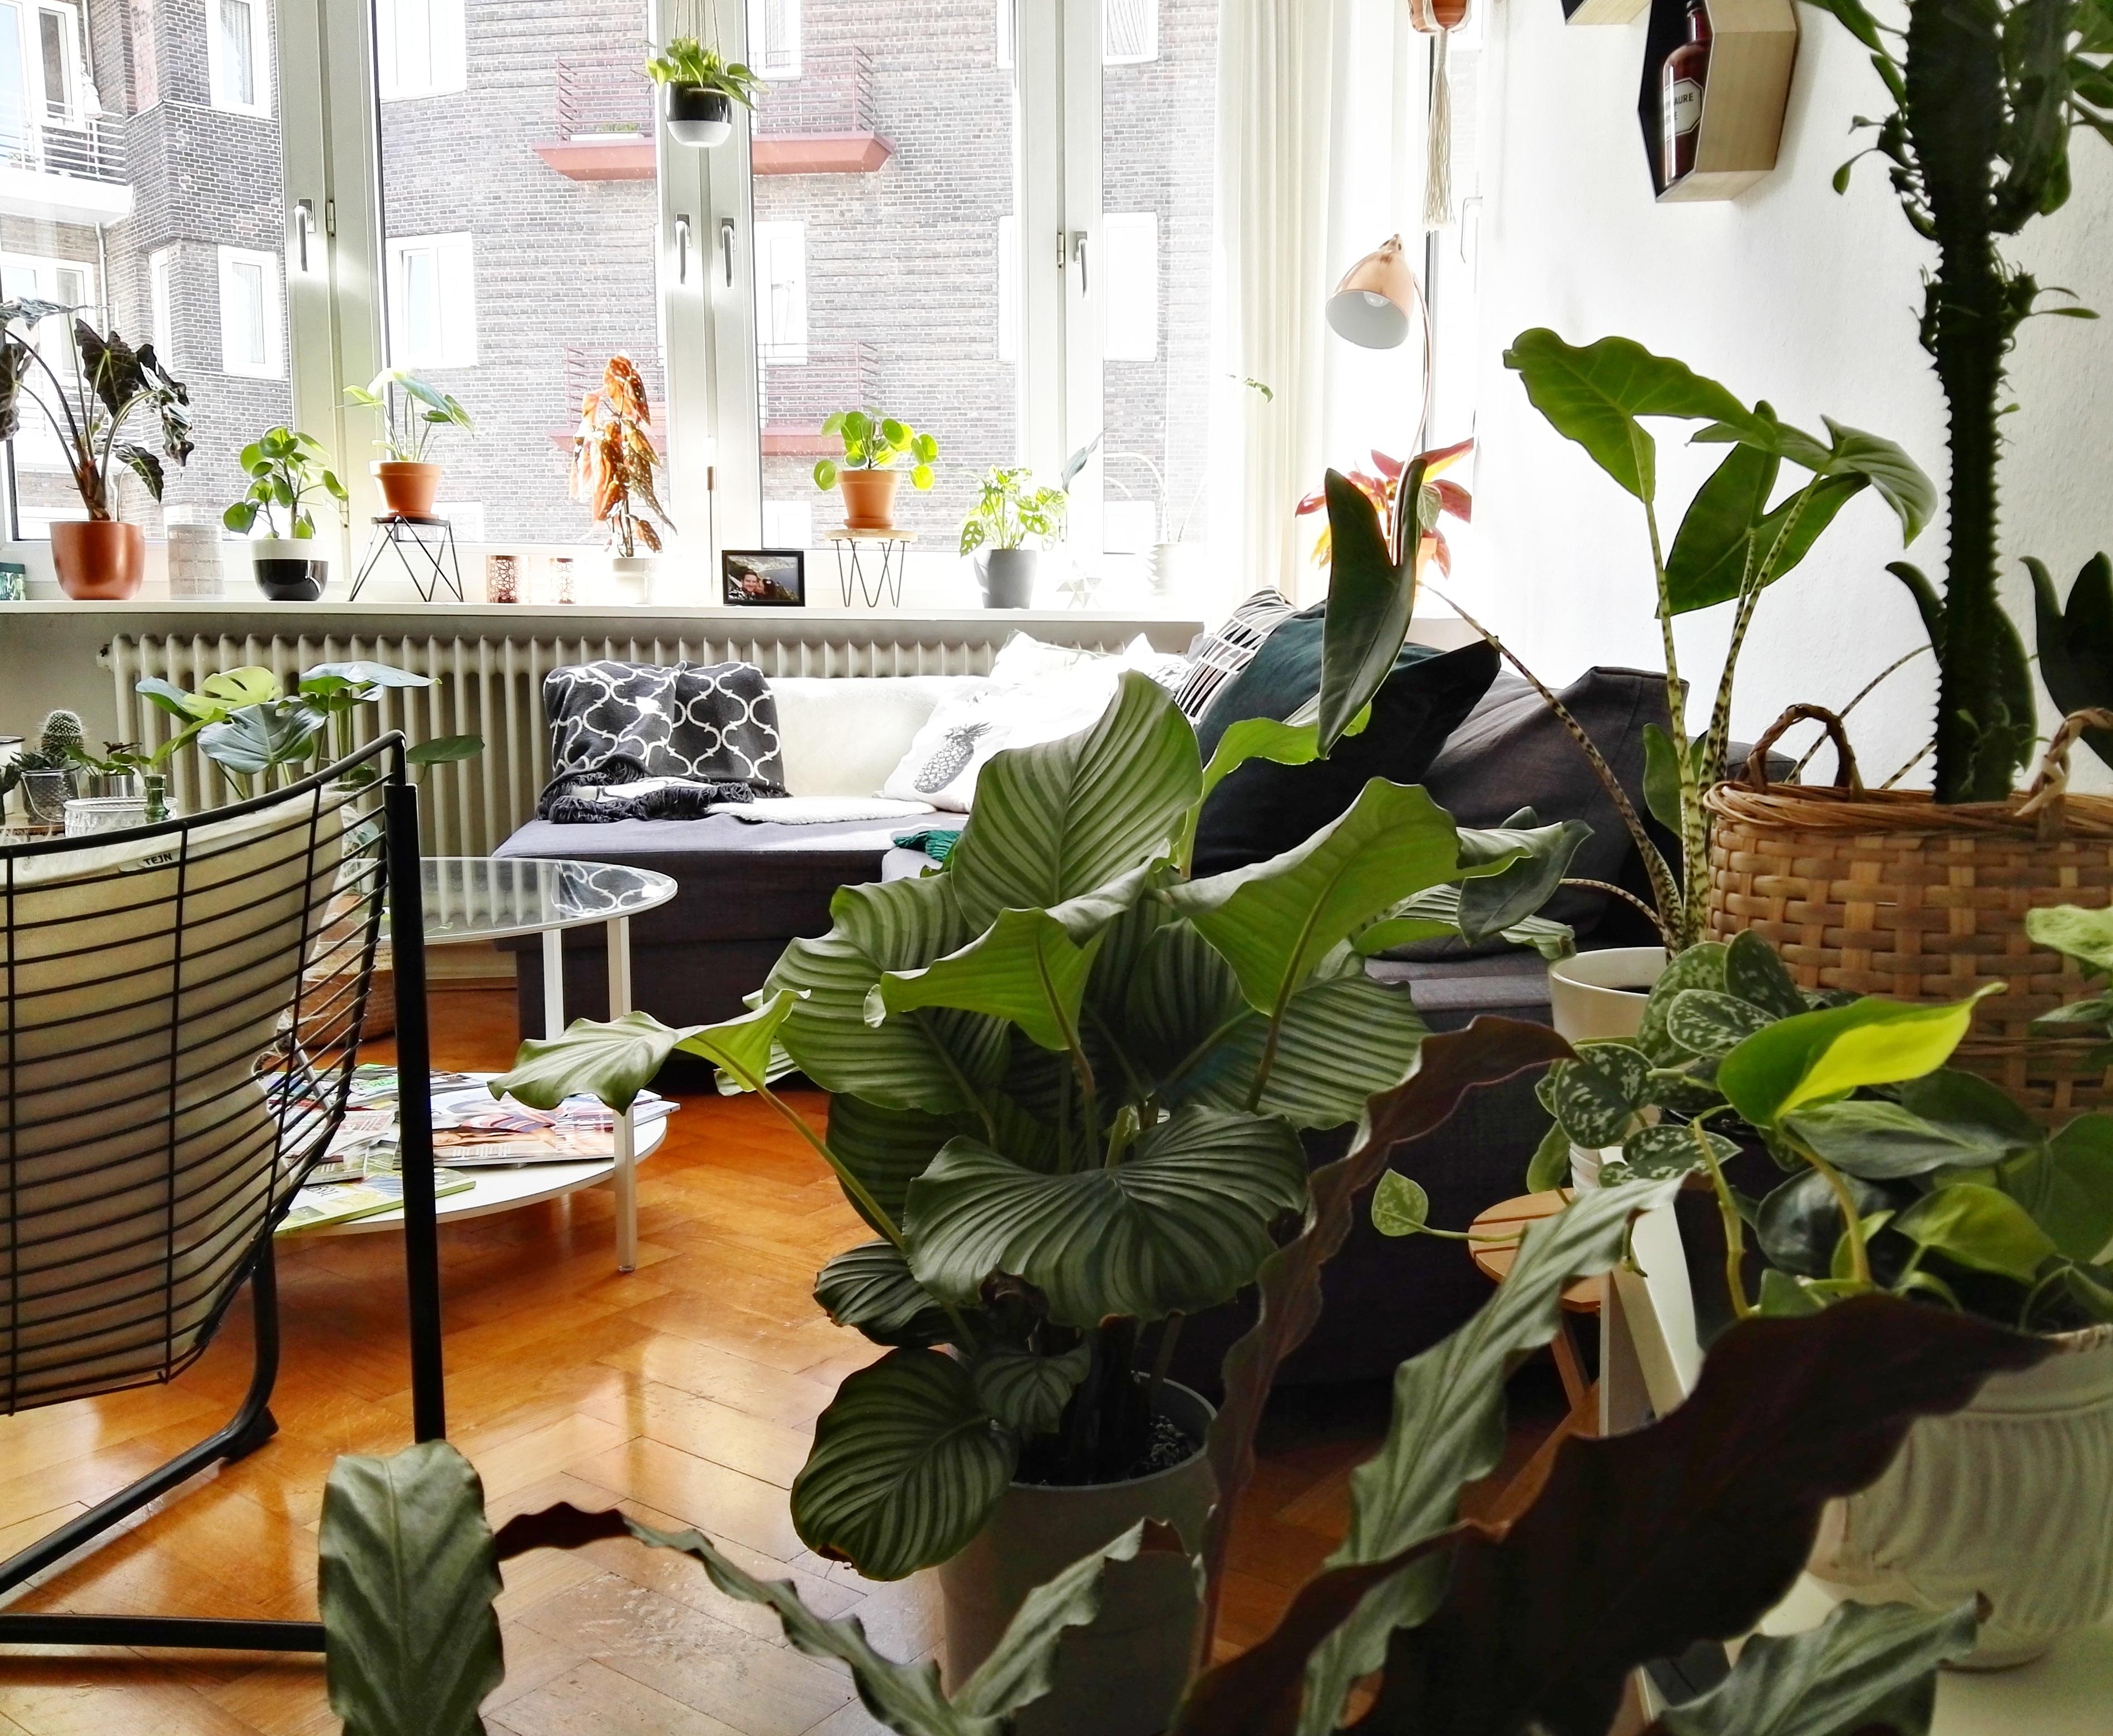 Pflanzen Teil 1 #interior #livingroom #urbanjungle #plantlover #plantgang #pflanzenliebe 